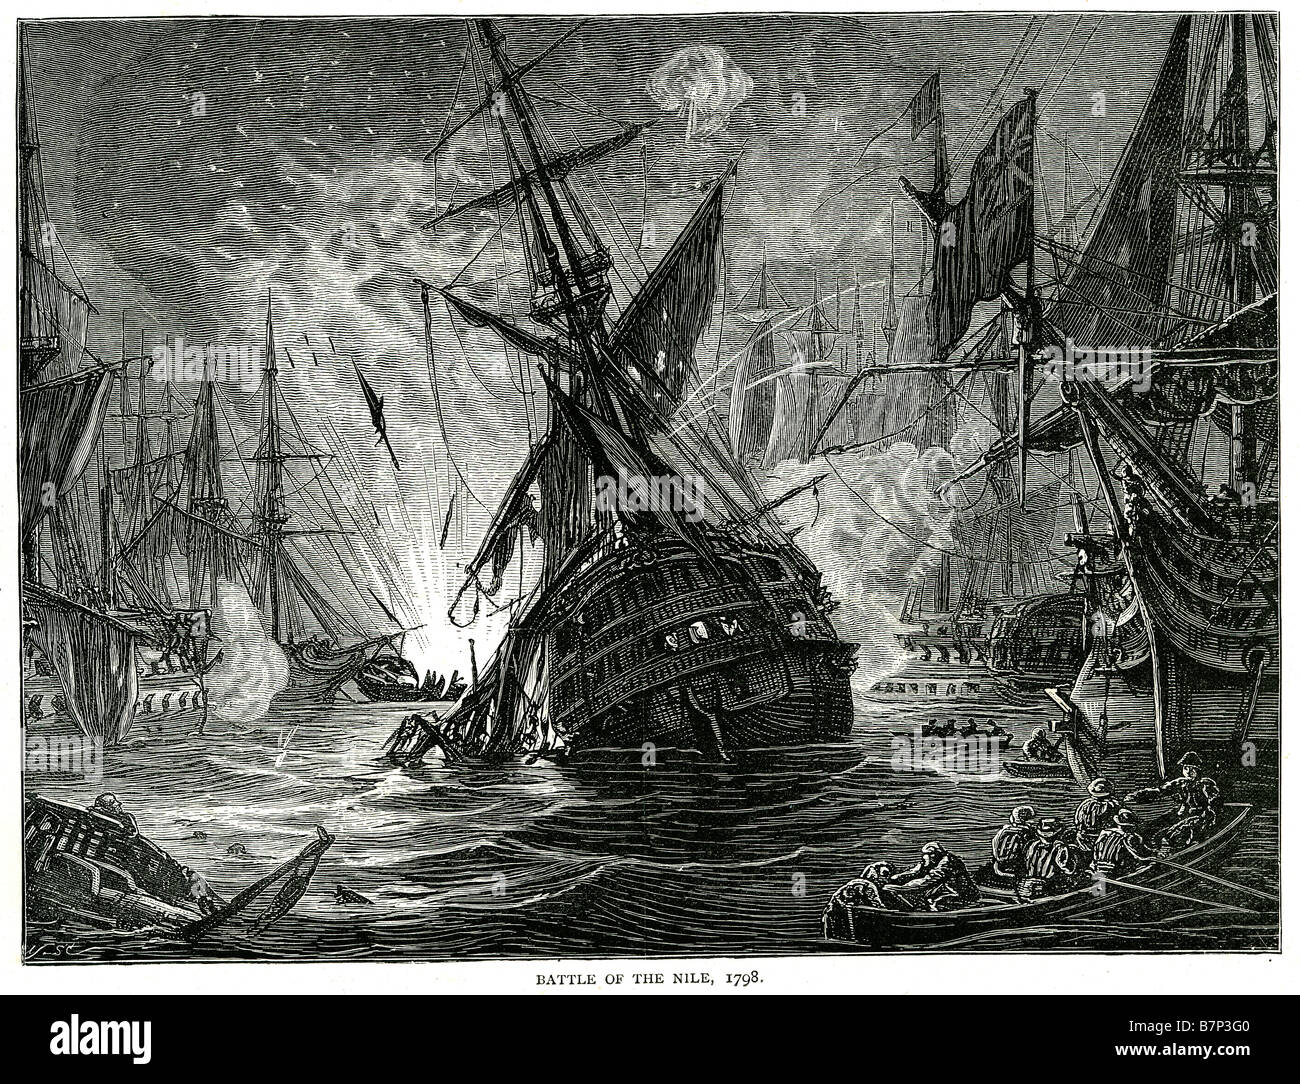 Schlacht Nil 1798 Schlacht Schiff Flotte Meer Wasser Segeln Segeln Kanone Kanonen Explosion Fahnen Deck Mast versenkt sinkende Krieg Tod Stockfoto